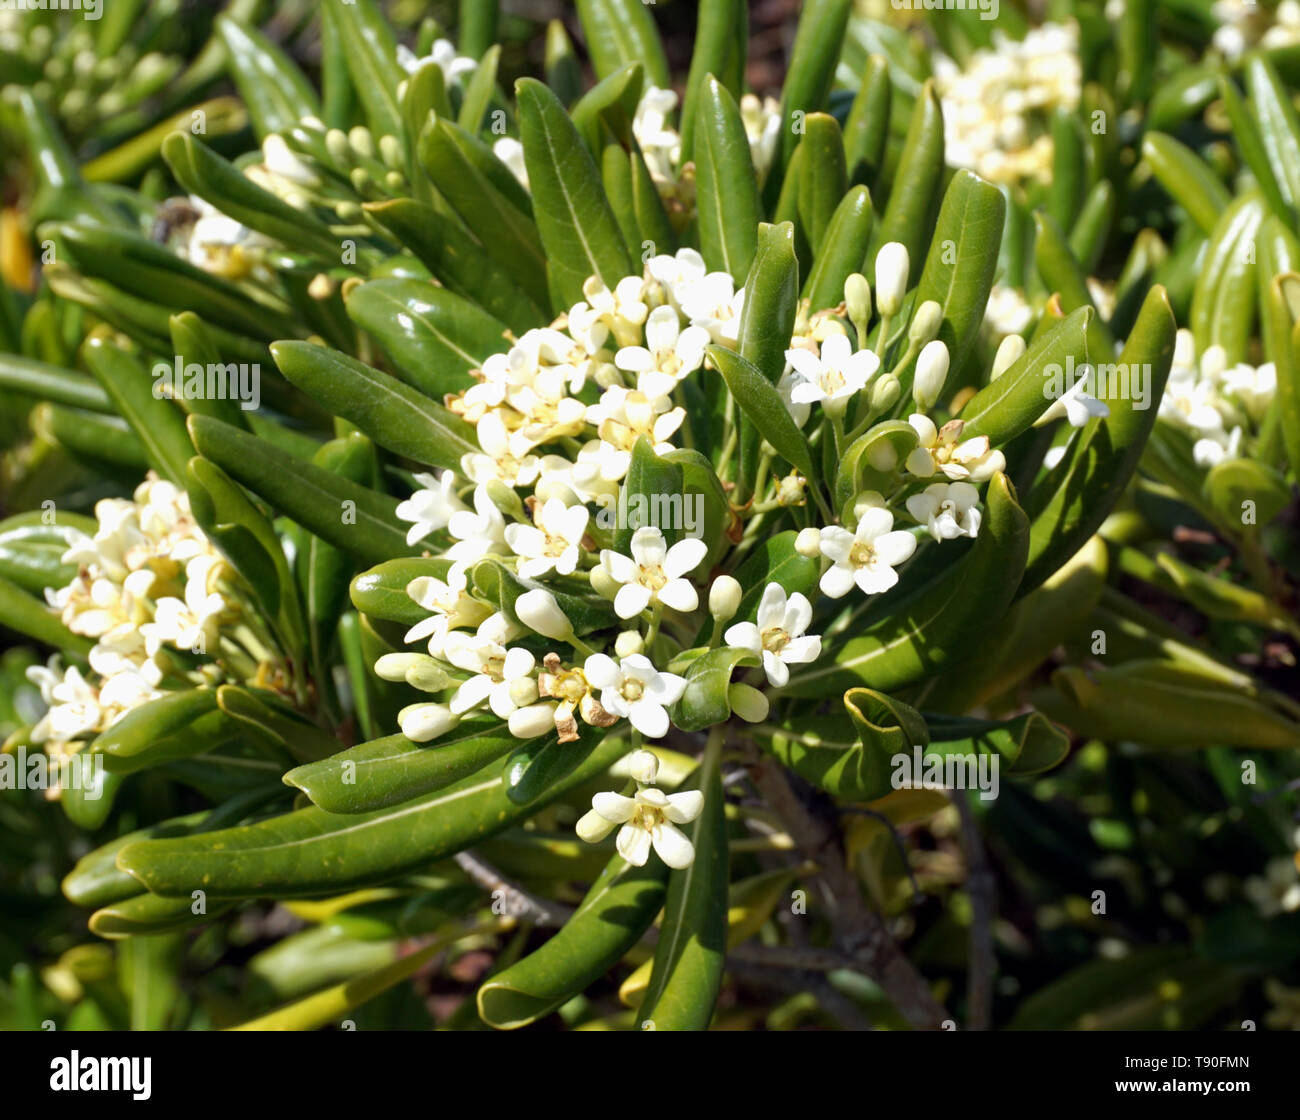 Fleurs blanches de plante méditerranéenne Pittosporum tobira. Avec de  nombreux arbustes de grappes de fleurs blanc crème parfumées Photo Stock -  Alamy